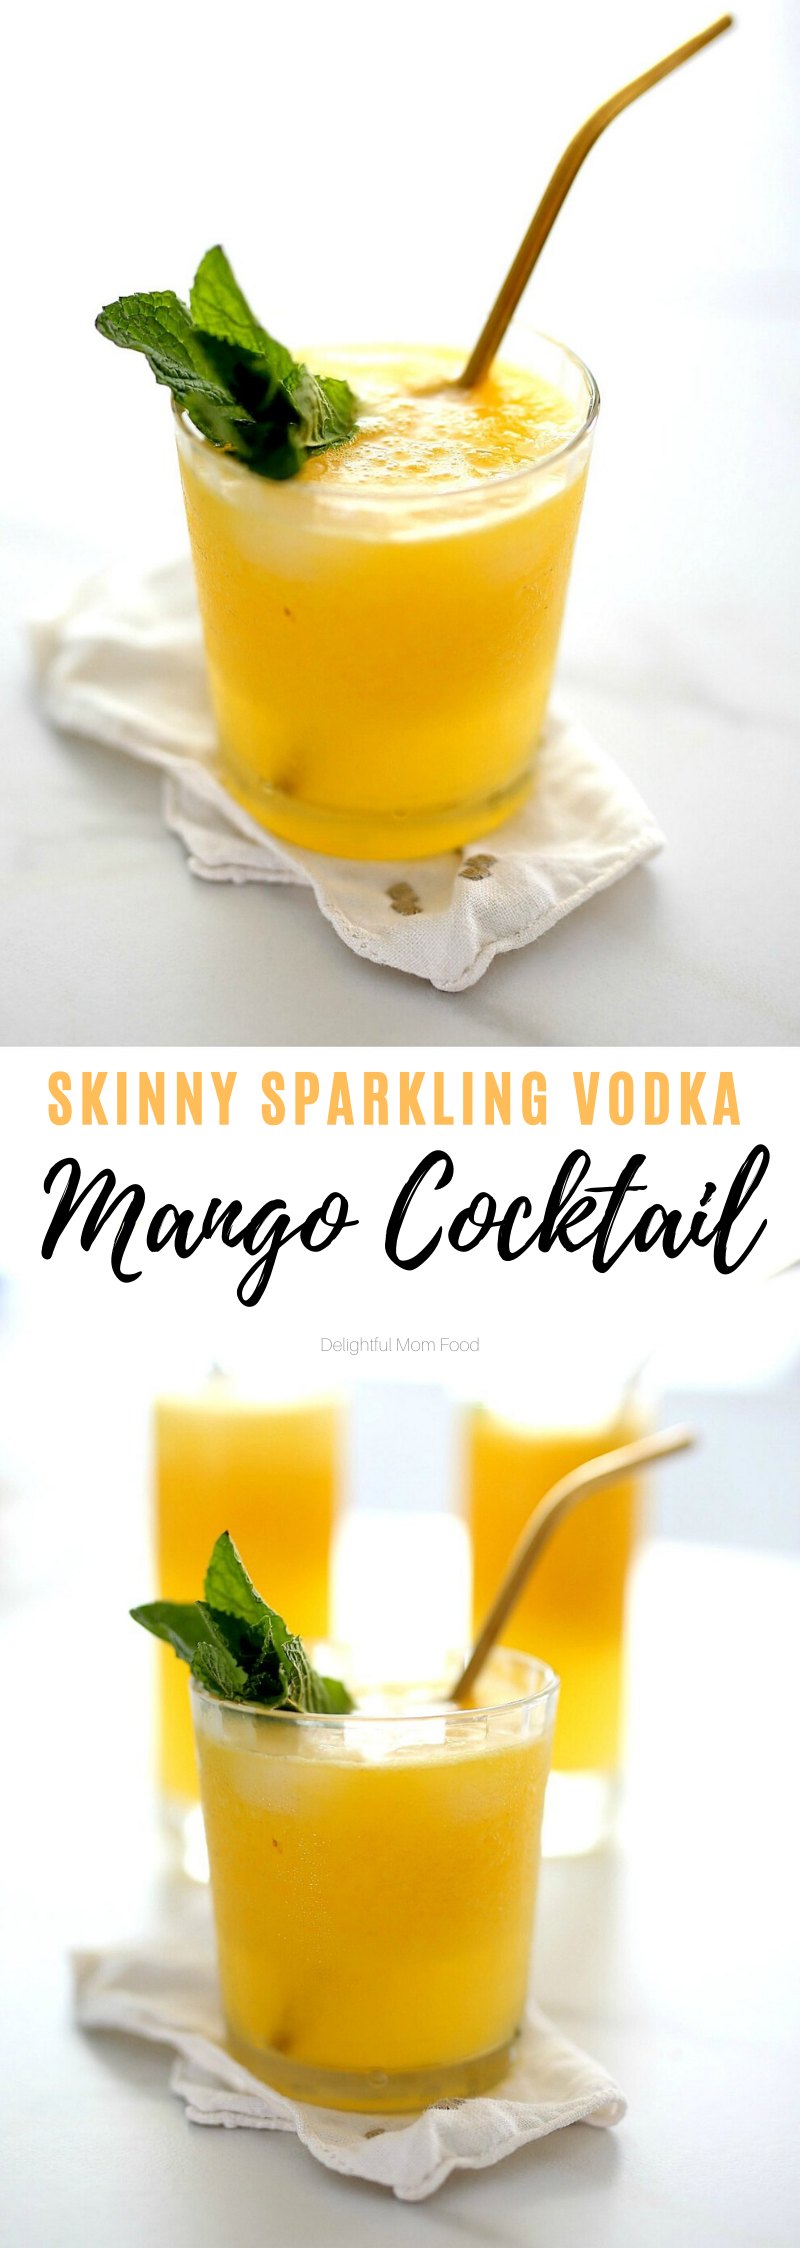 Cocktail Vodka Drink - Delightful Mom Food